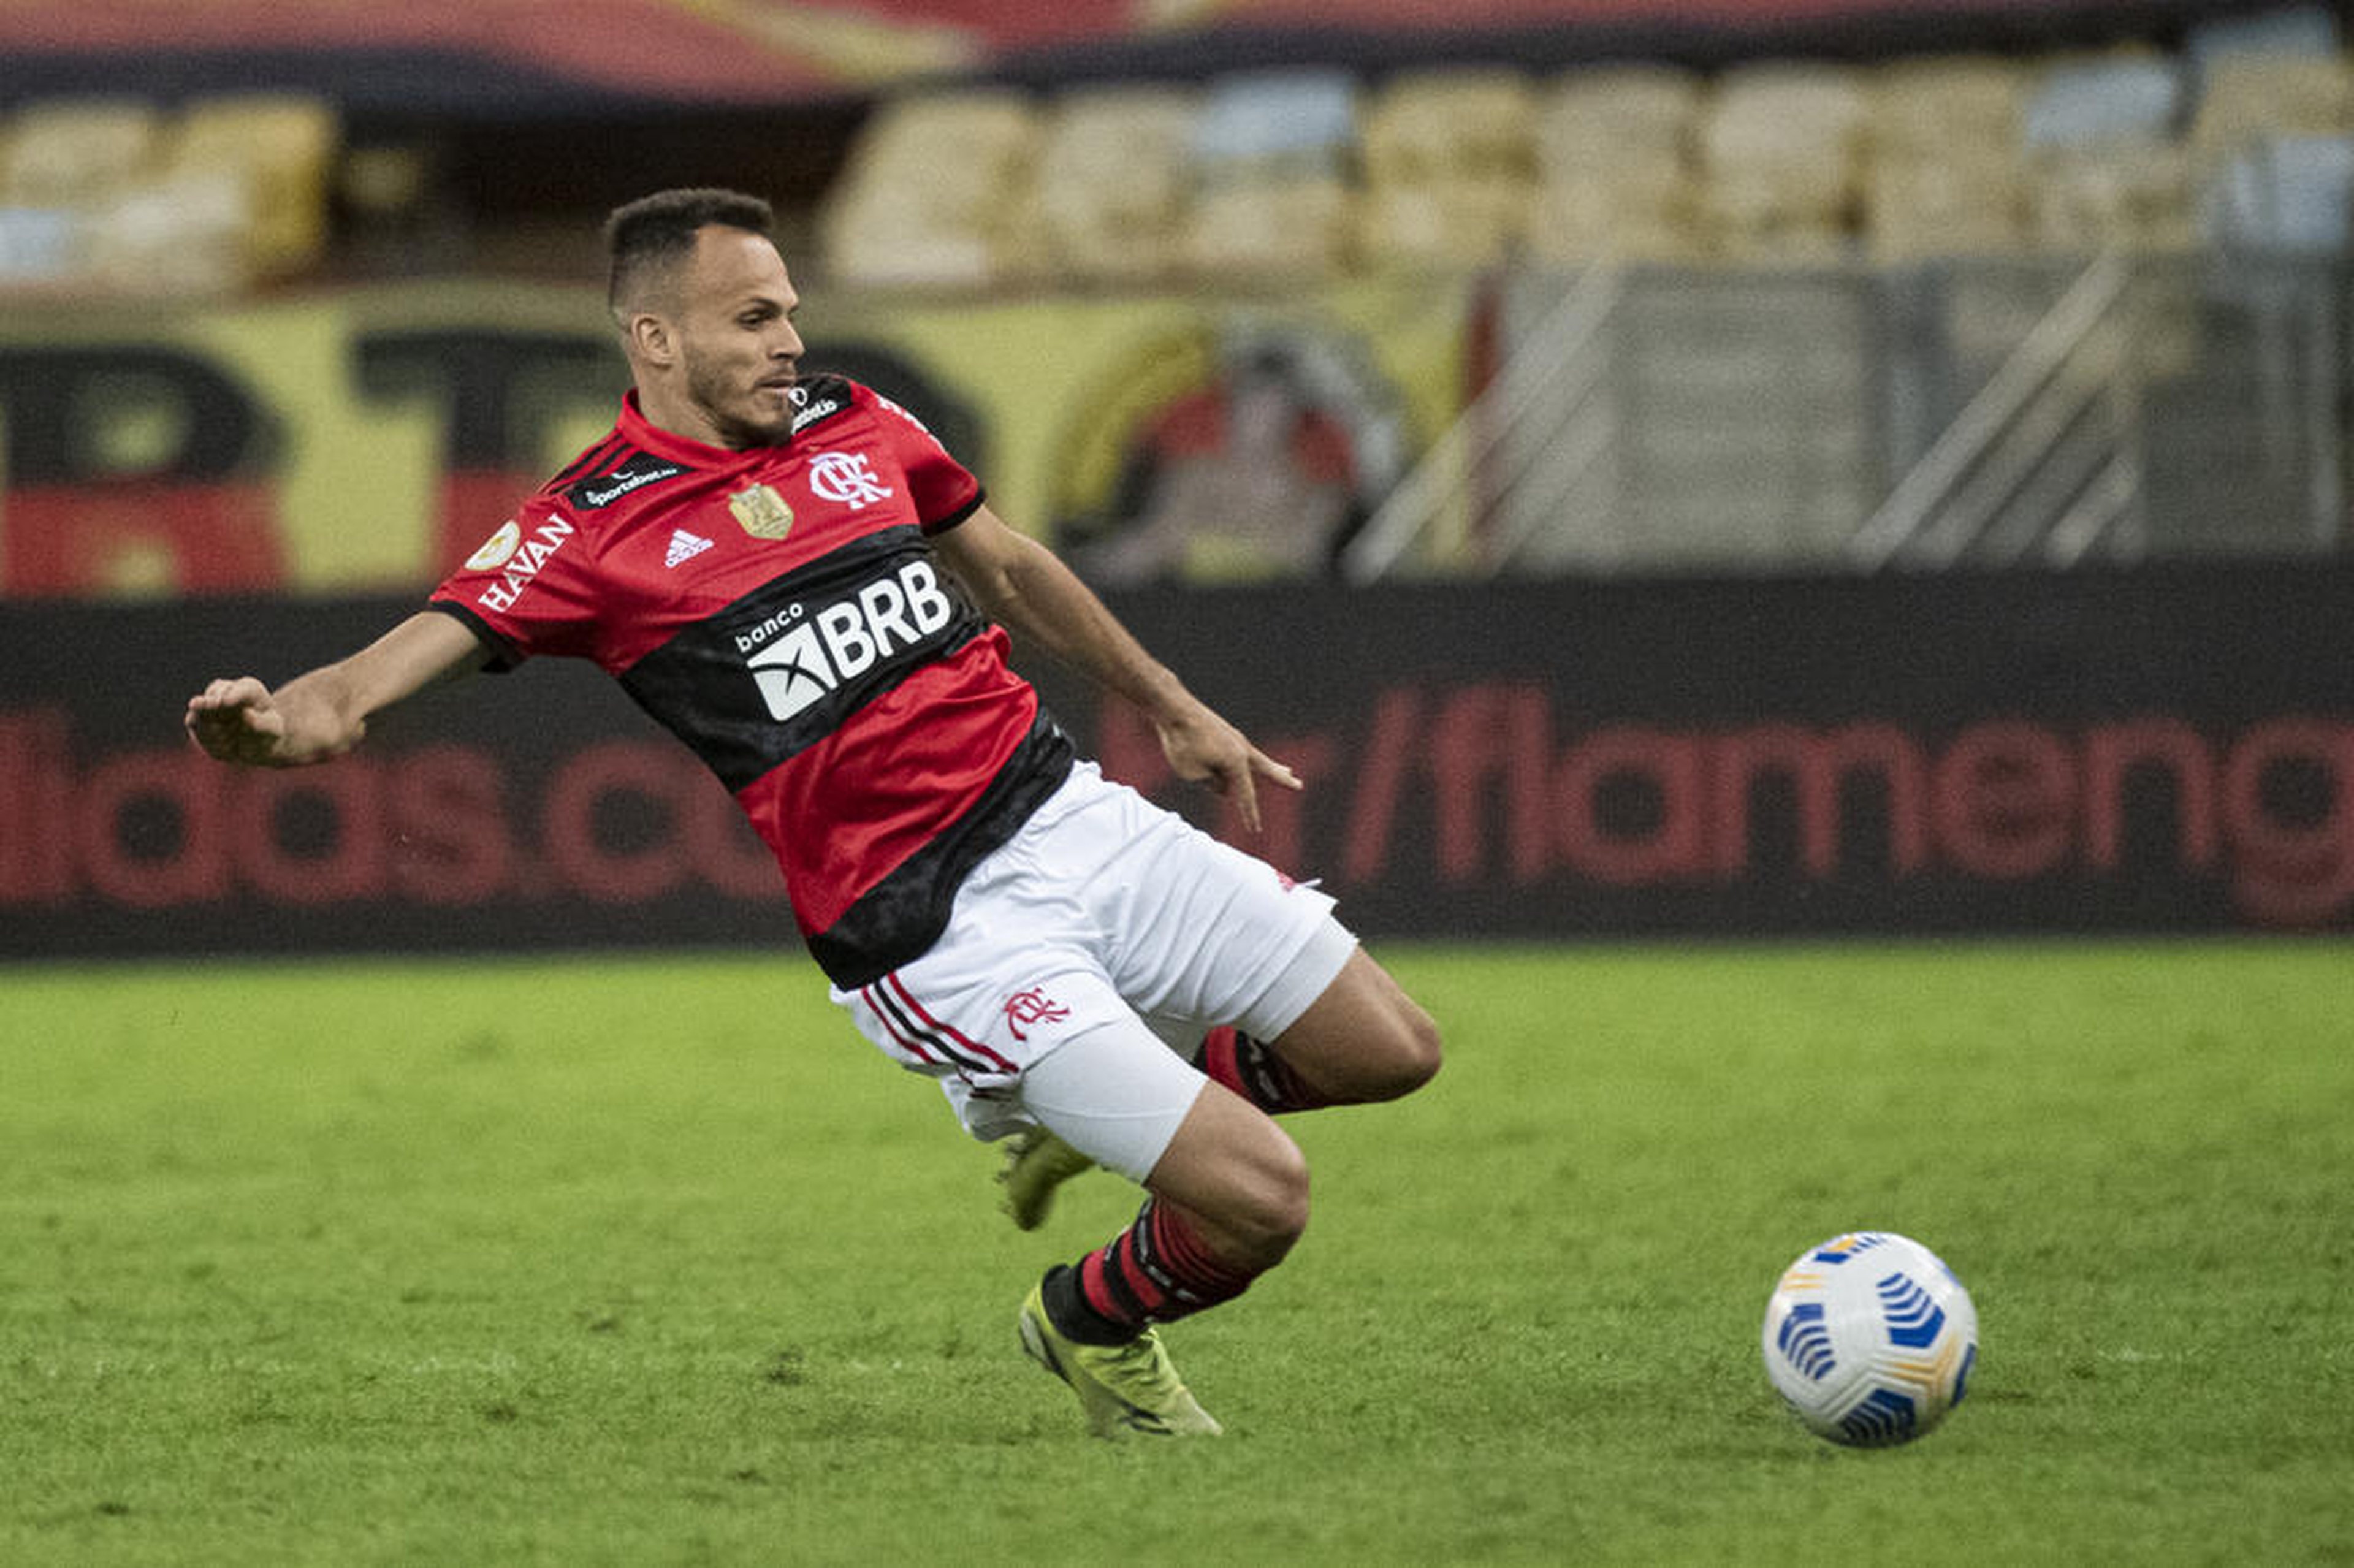 Alexandre Vidal/Flamengo/ Divulgação